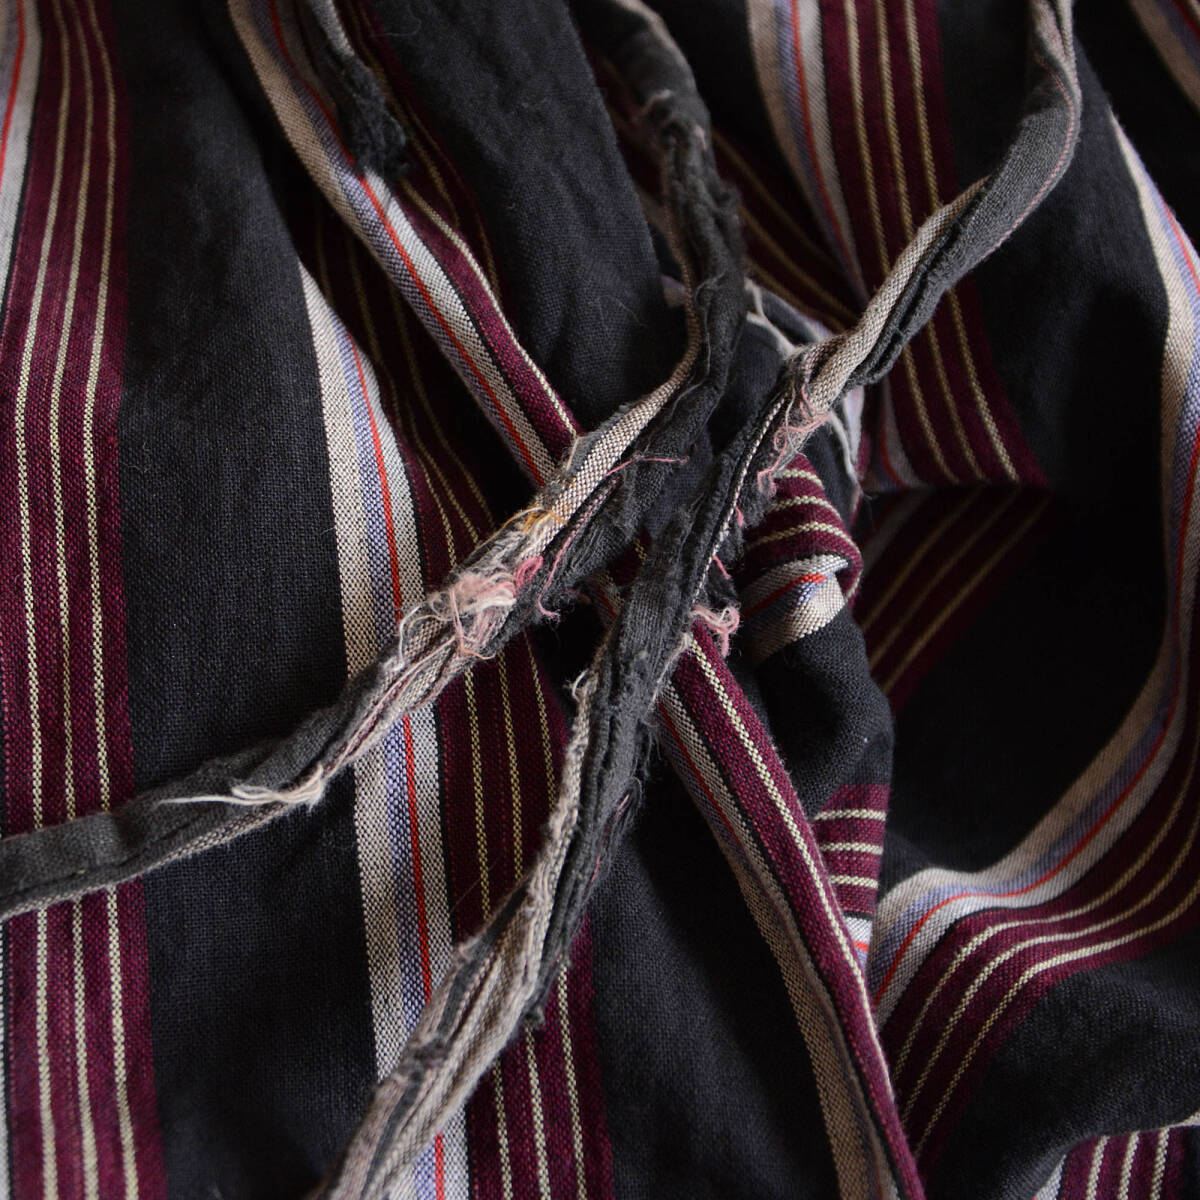 もんぺ 野良着 着物 パンツ 木綿 クレイジーパターン ジャパンヴィンテージ 昭和 リメイク素材 monpe noragi pants japanese fabric